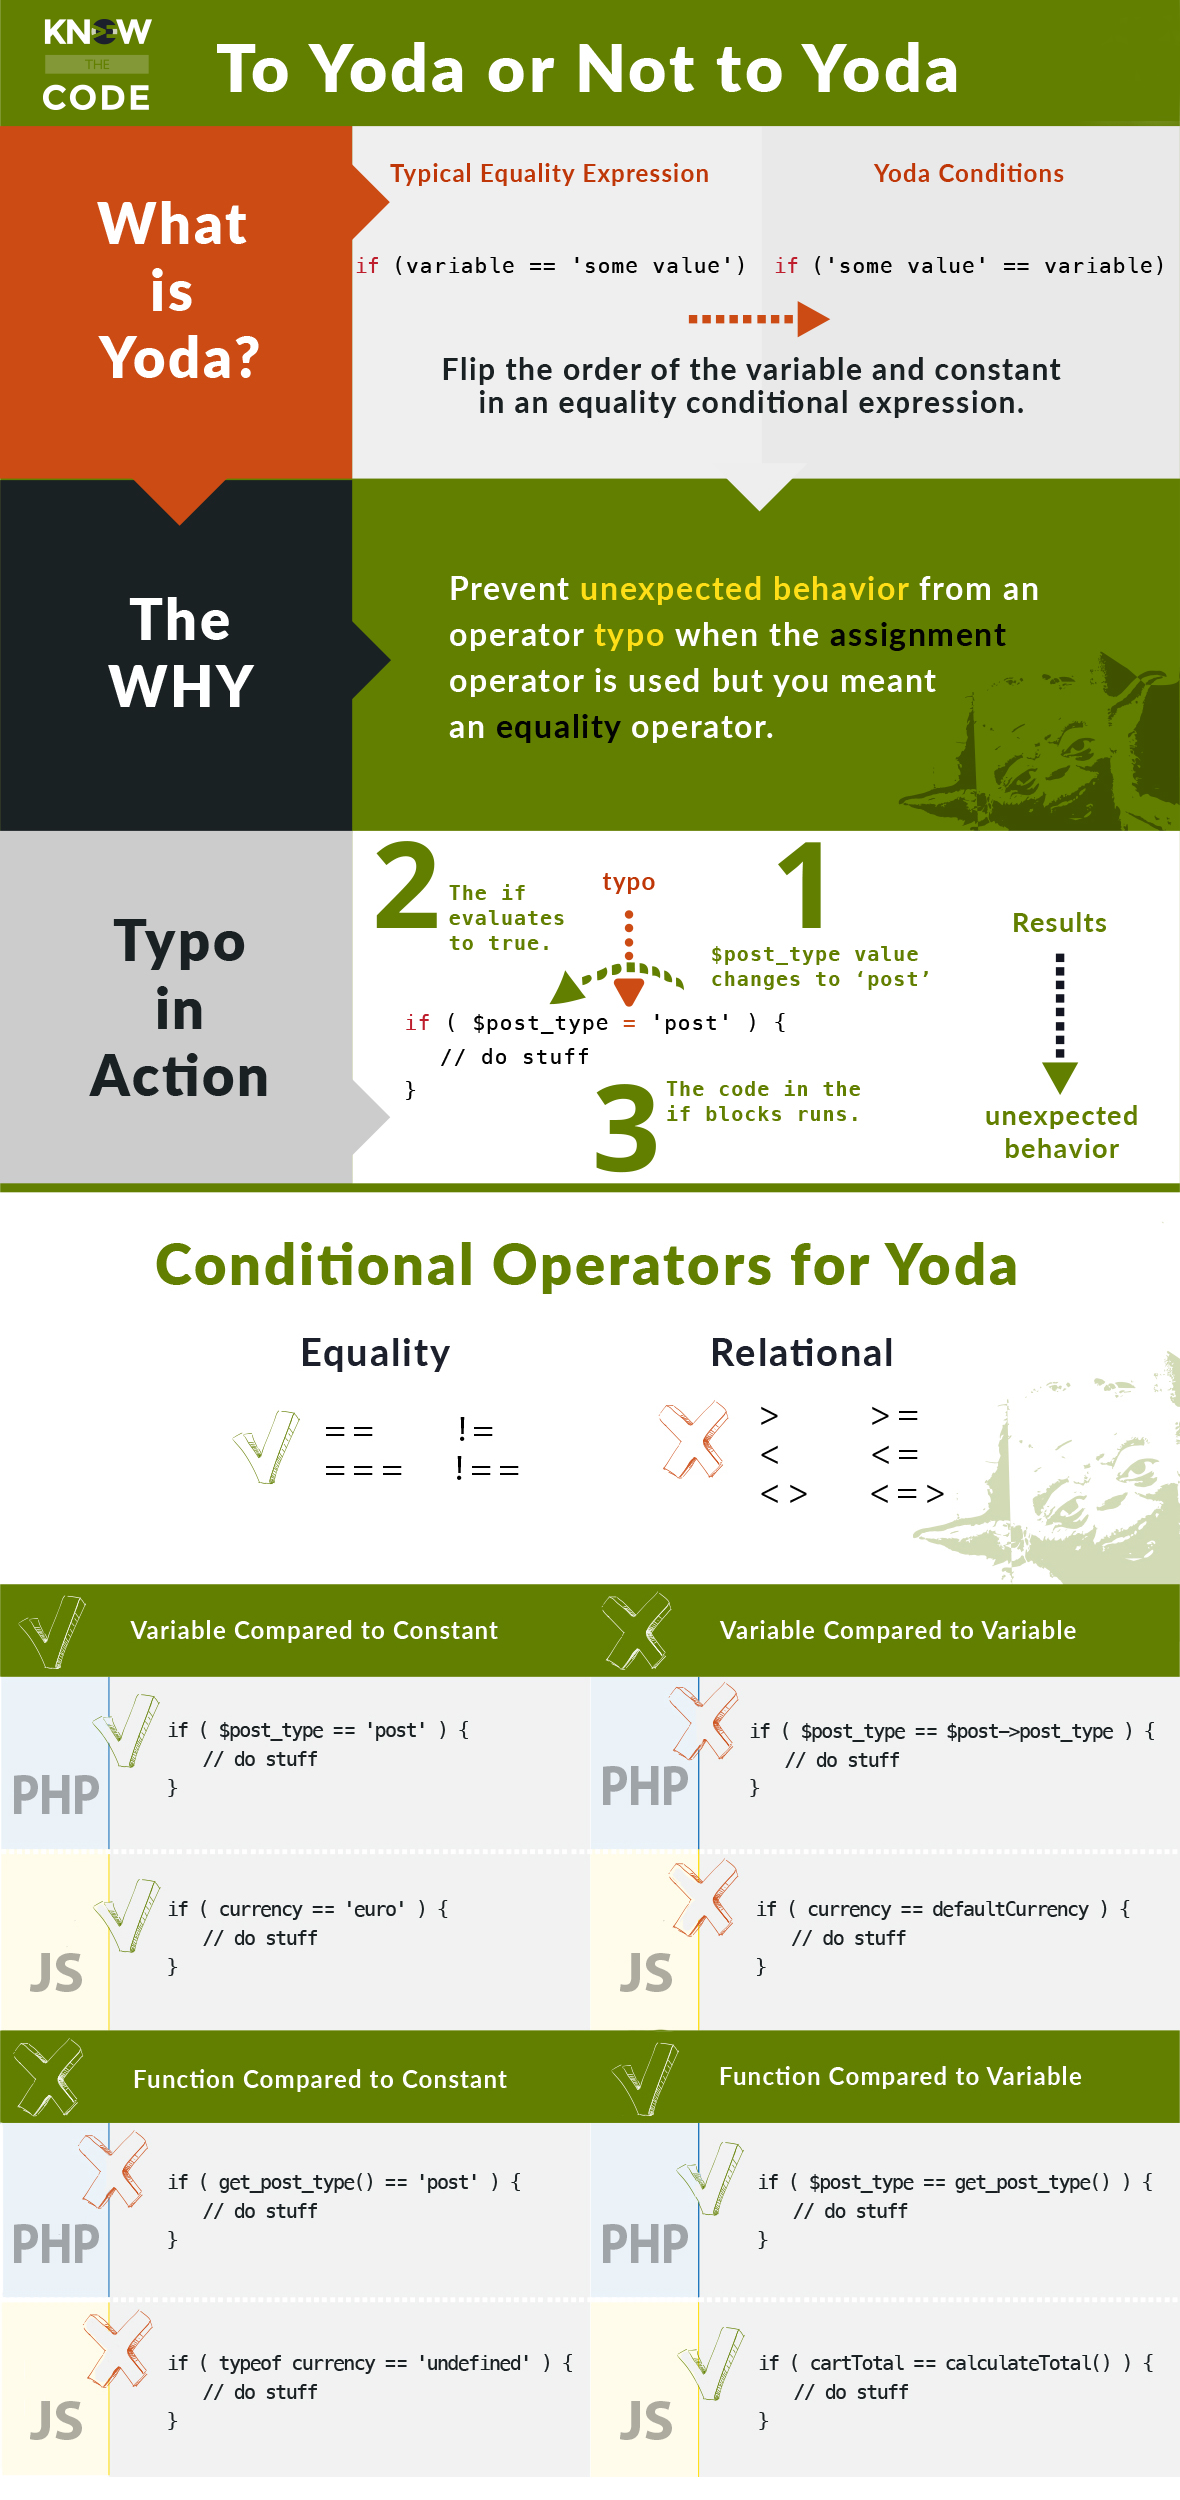 Yoda Conditions: To Yoda or Not to Yoda